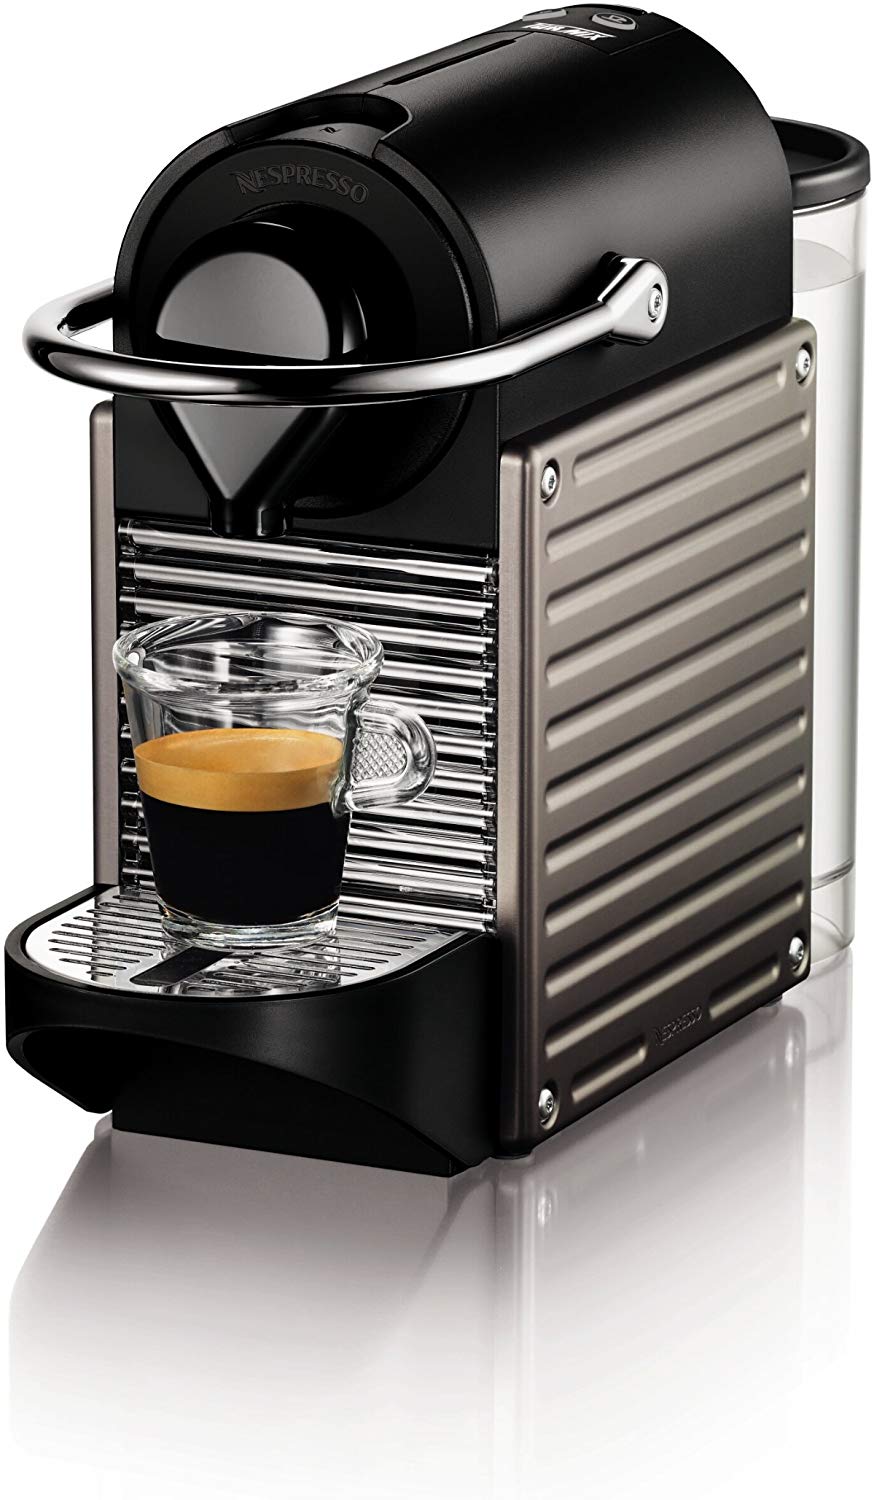 ثلاجة الإيجار جرف  تجربة ماكينة قهوة نسبريسو بيكسي - مكائن ومستلزمات تحضير القهوة - مجتمع  القهوة